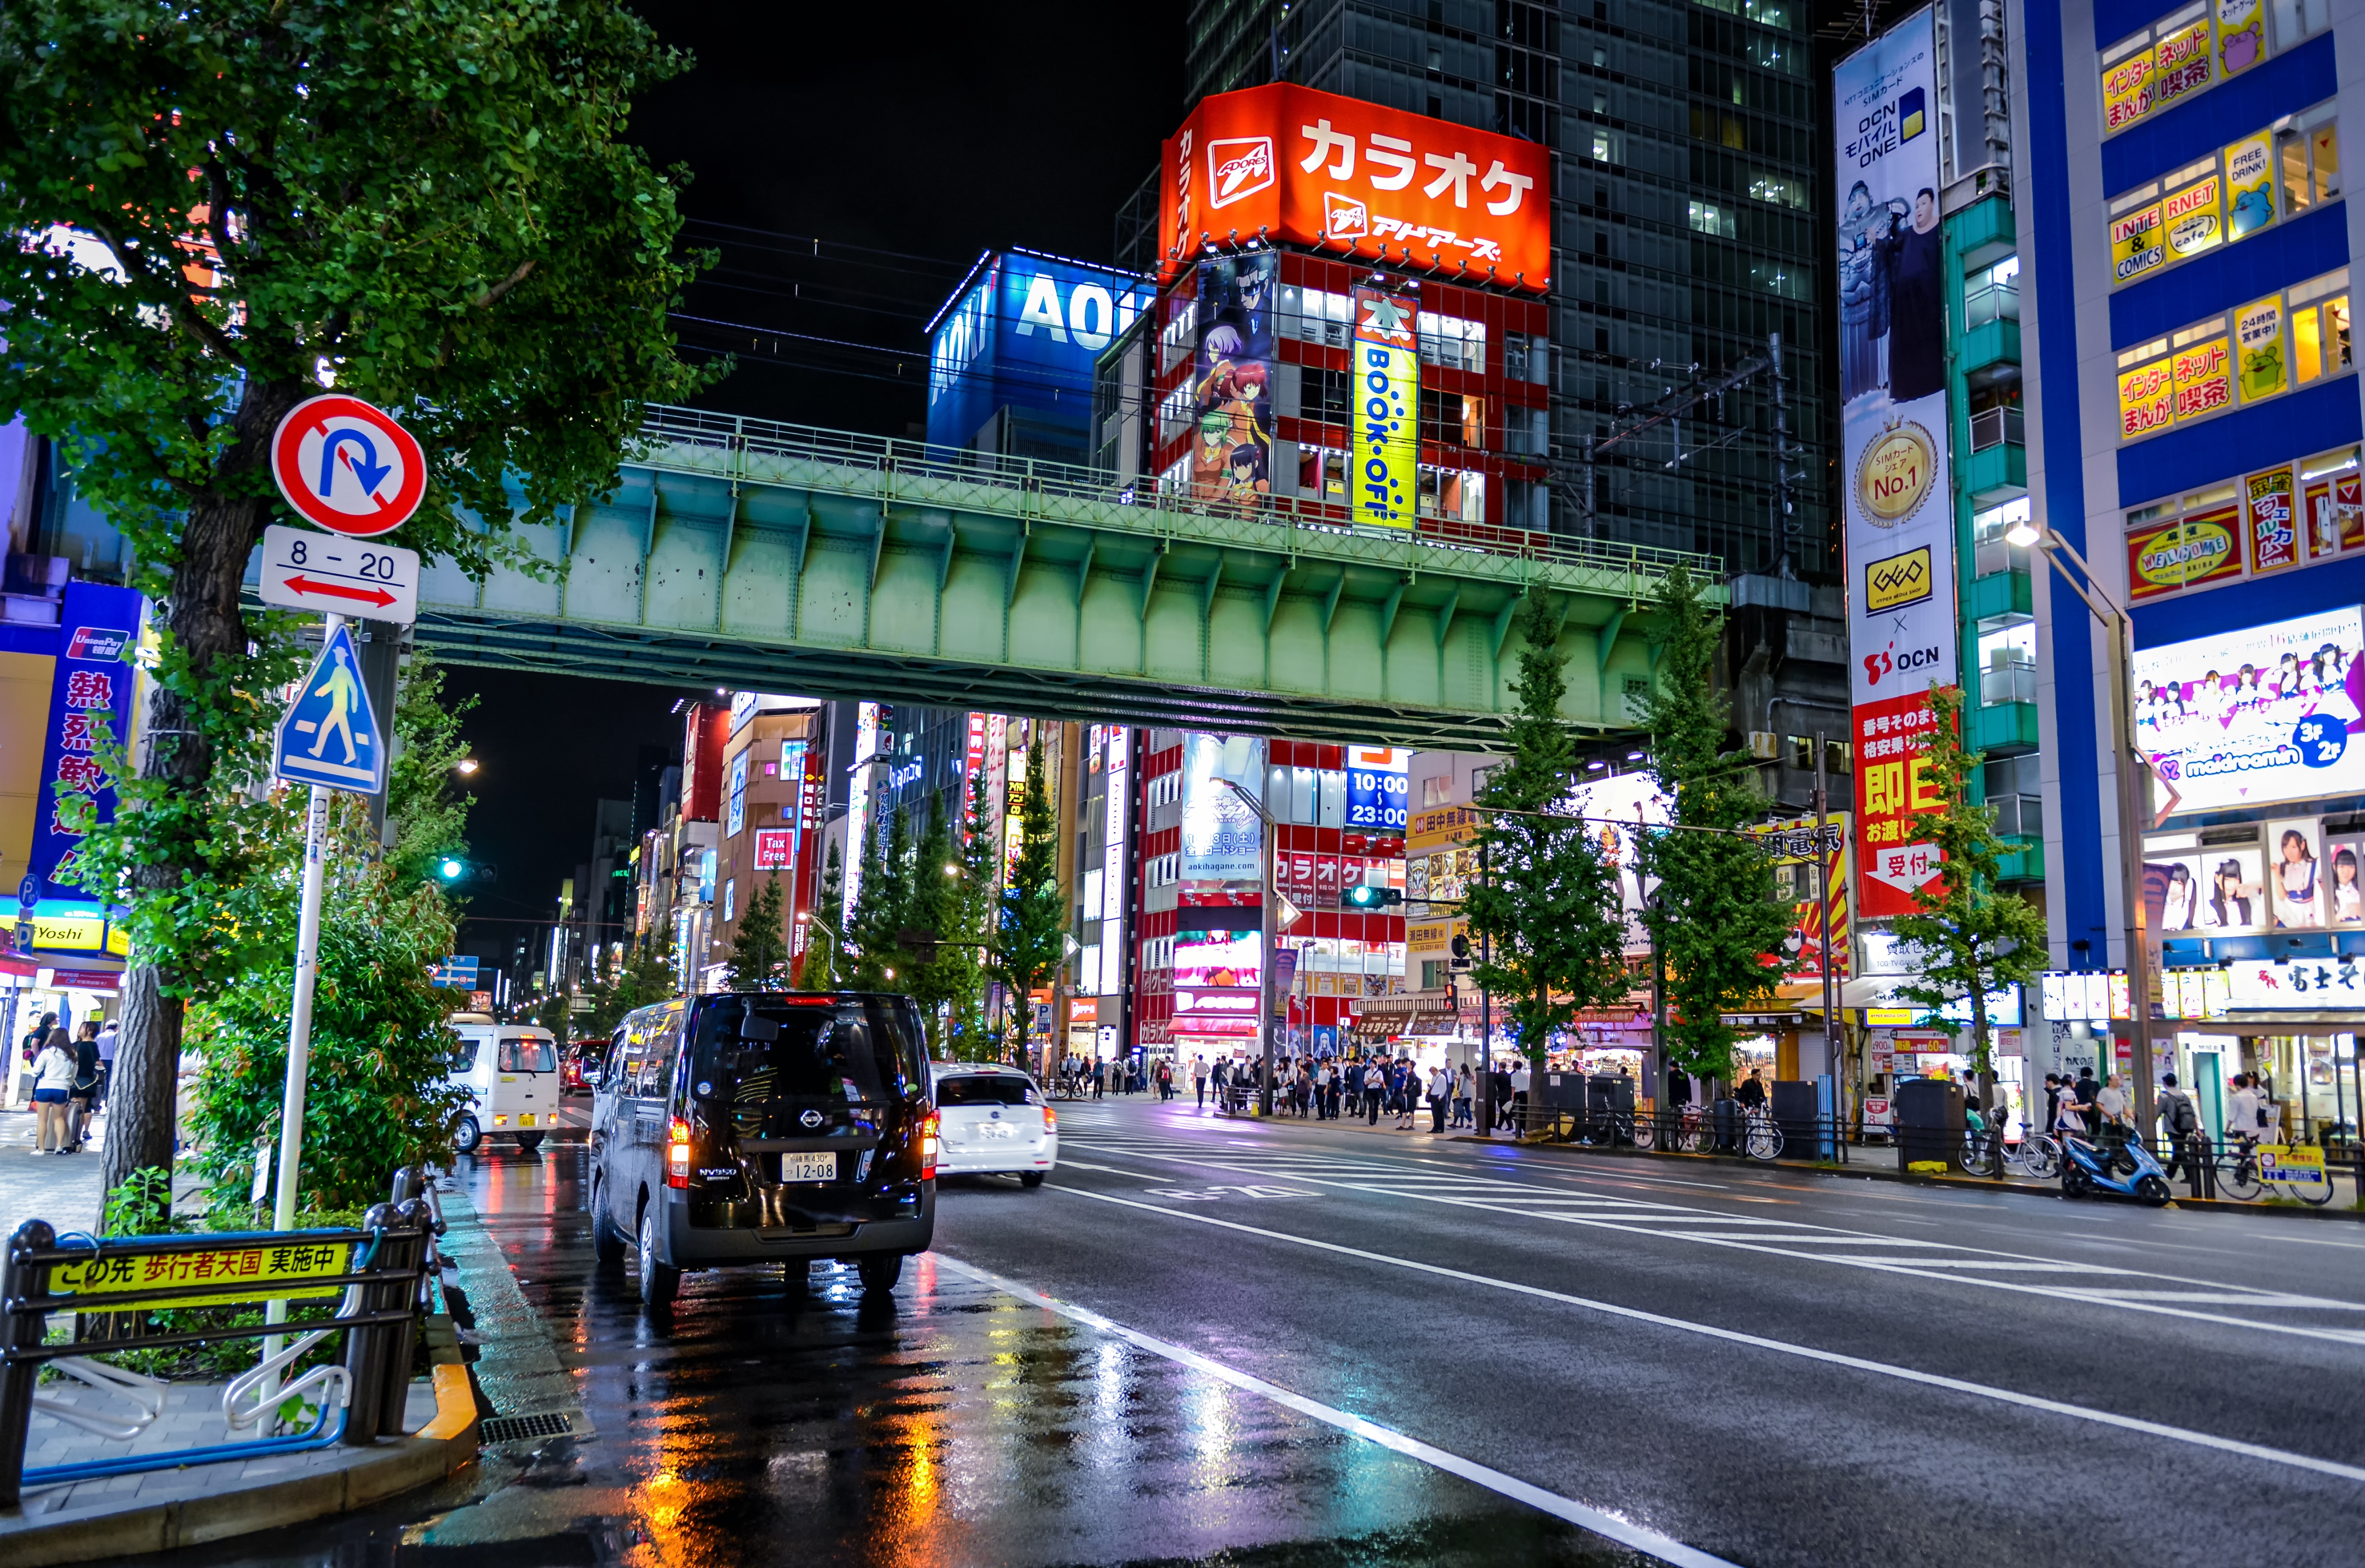 盘点日本著名的动漫圣地,看看你最想去哪个呢